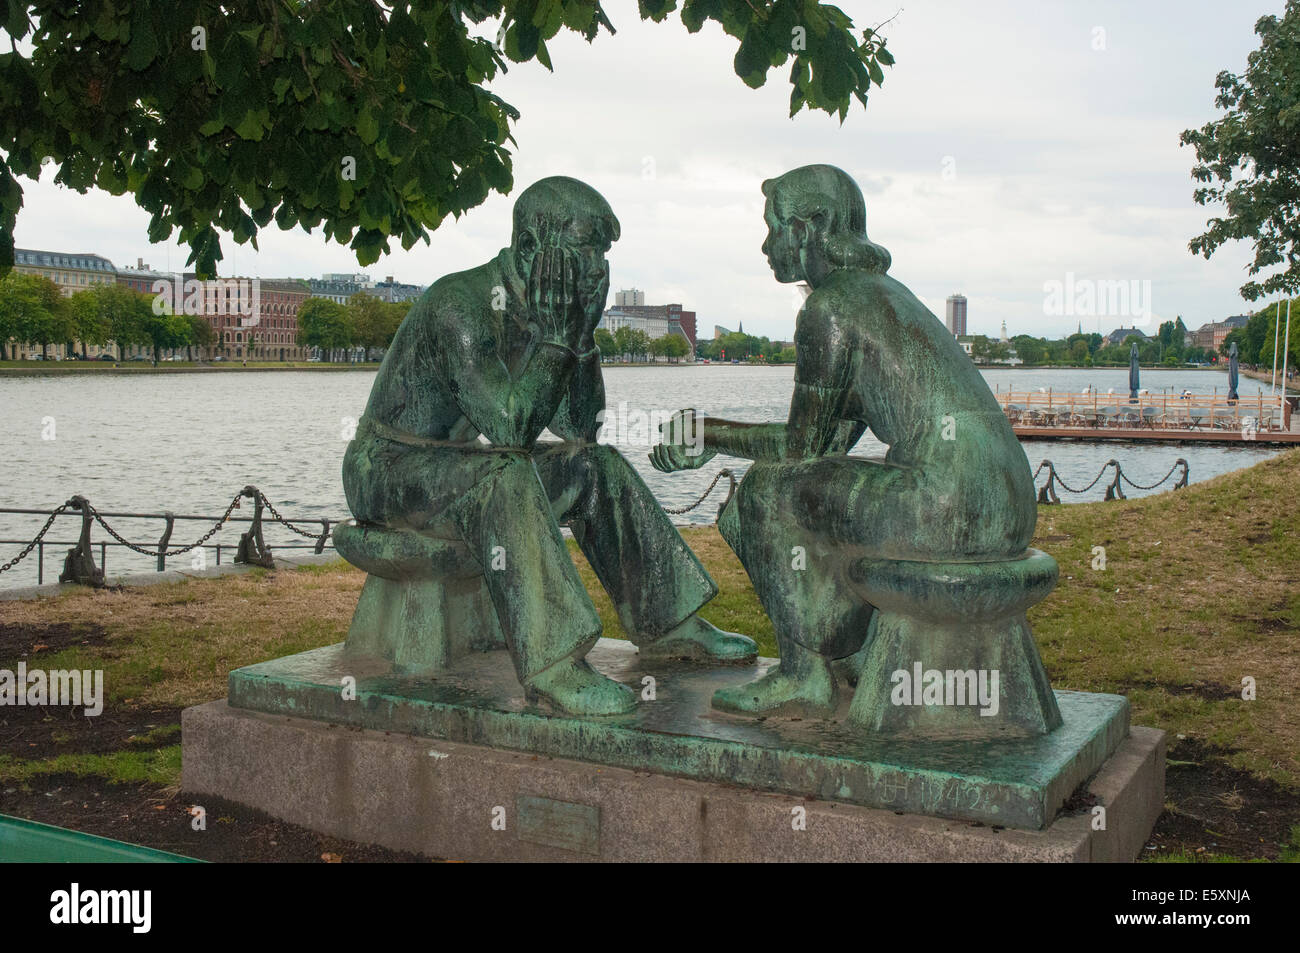 Estatuas de bronce al lado de Peblinge así, uno de los lagos del canal de Vesterbro, Copenhague Foto de stock